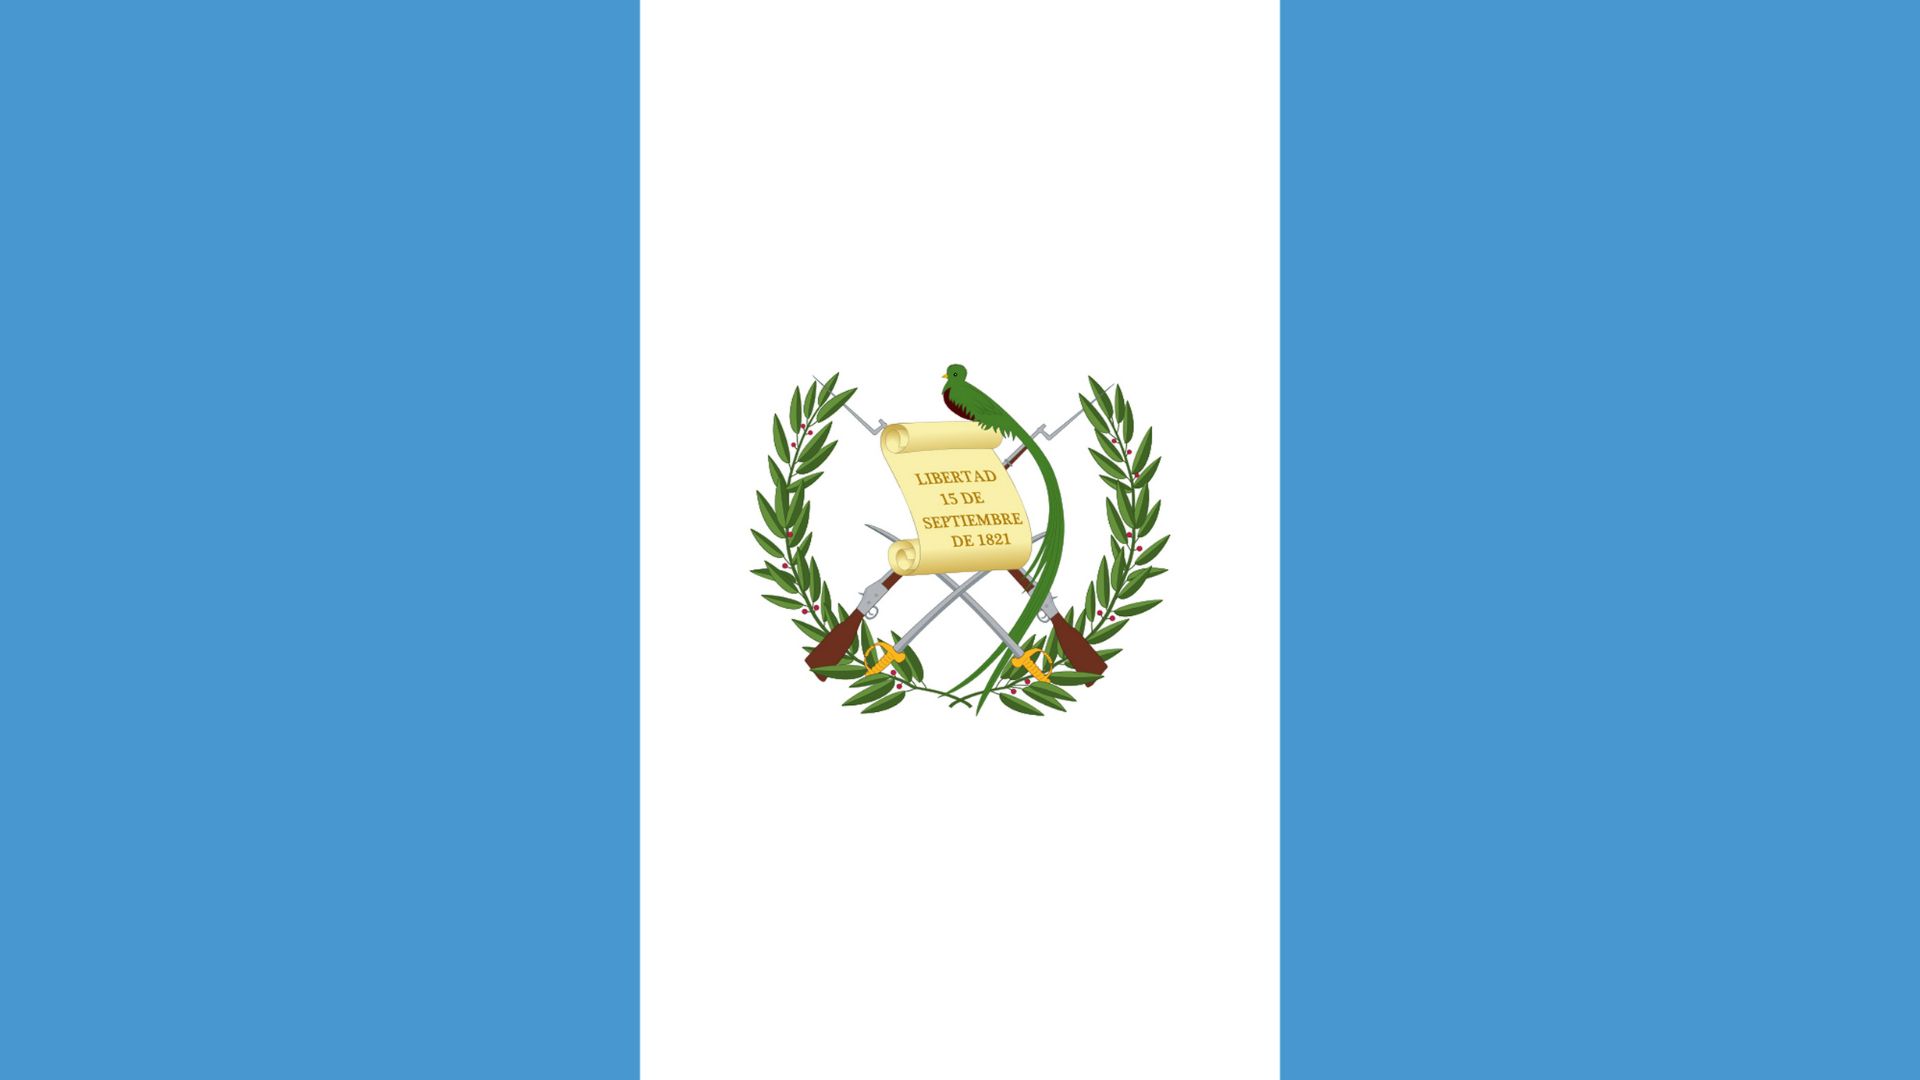 A bandeira da Guatemala é composta por duas cores: azul celeste e branco. A faixa branca entre as duas faixas azuis celeste representa a localização da Guatemala como uma terra entre dois oceanos, o Oceano Pacífico e o Oceano Atlântico. A cor branca significa também paz e pureza.